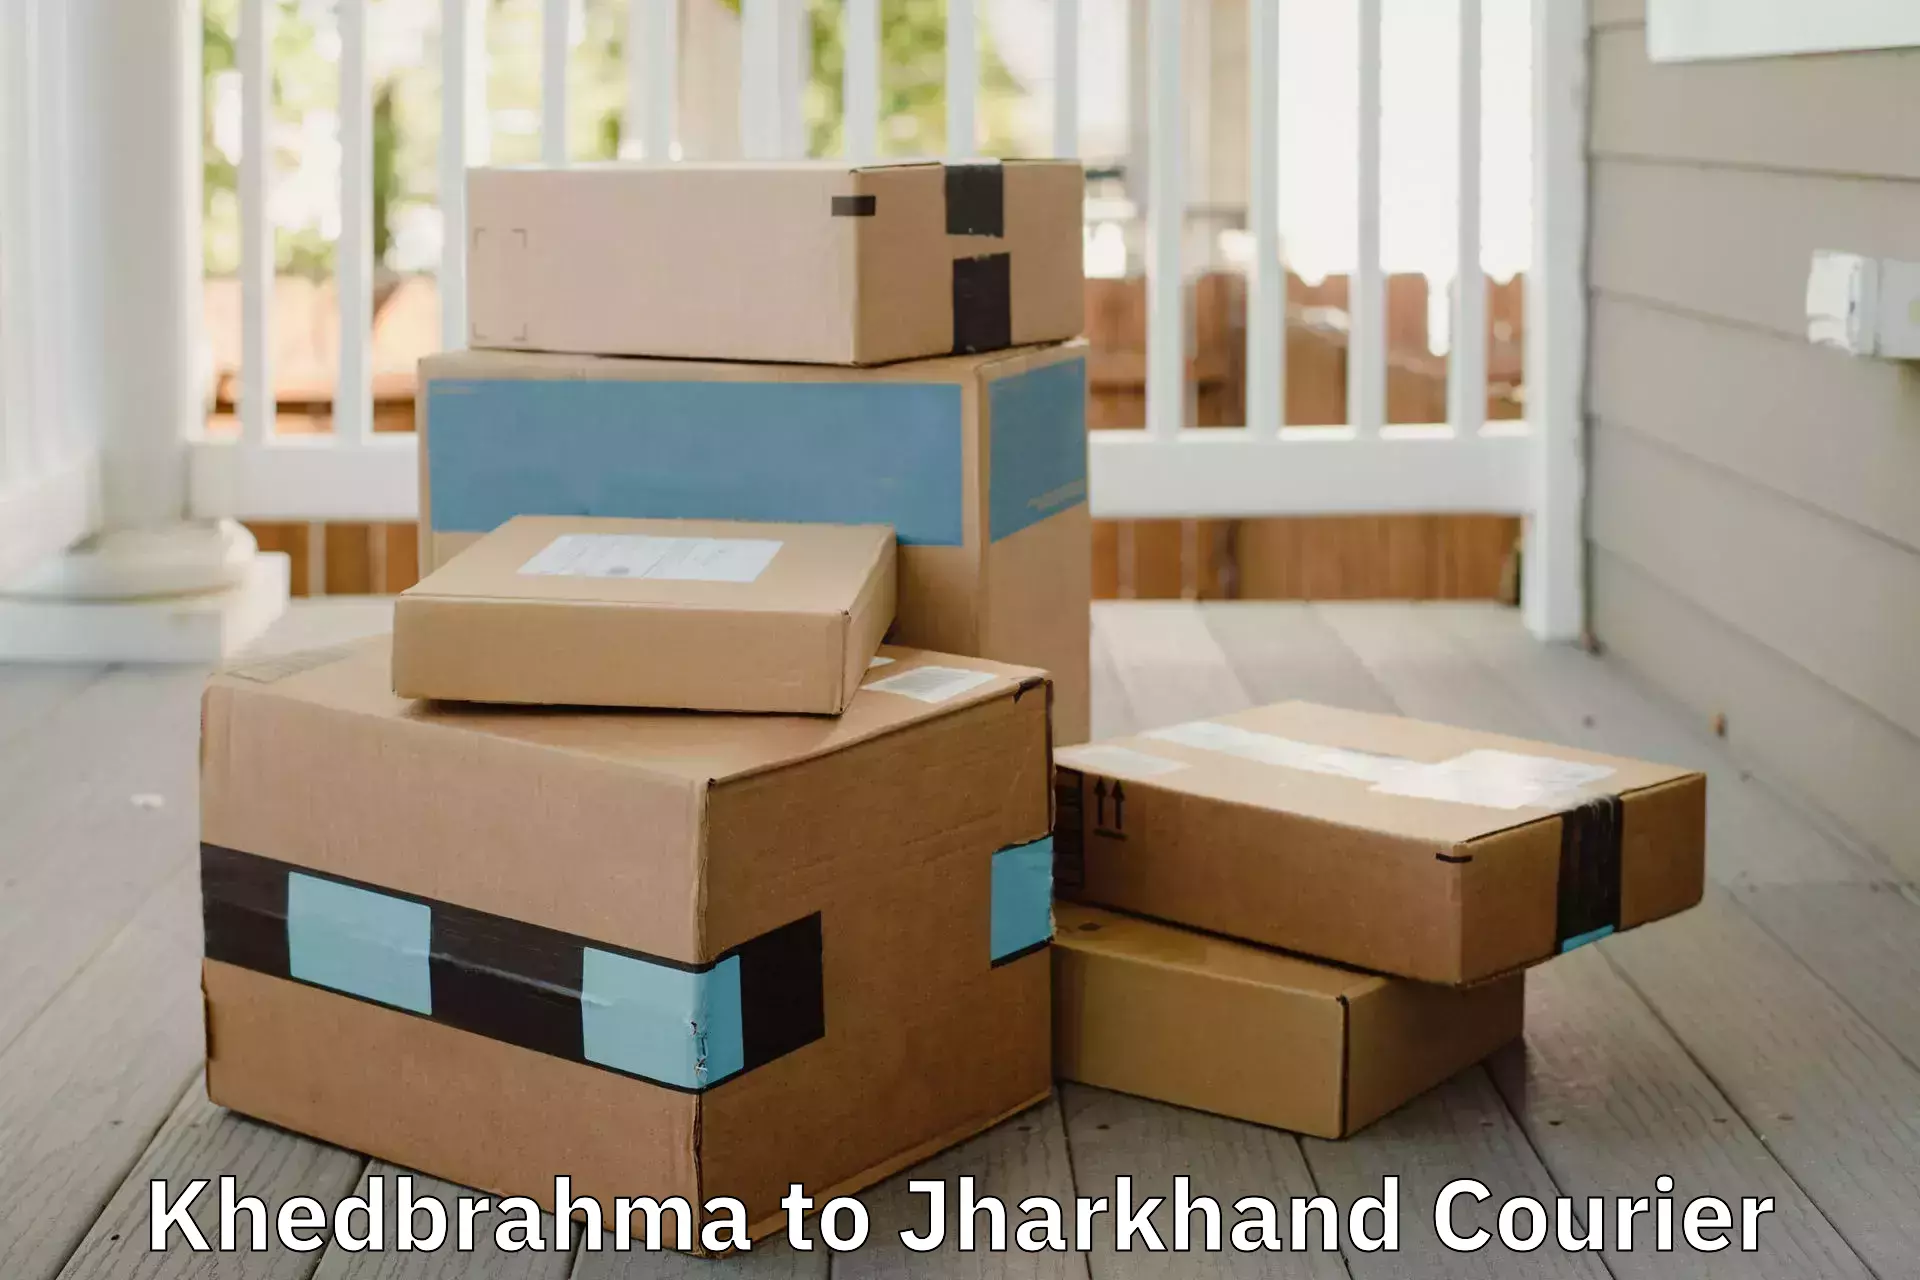 Home shifting experts Khedbrahma to Jharkhand